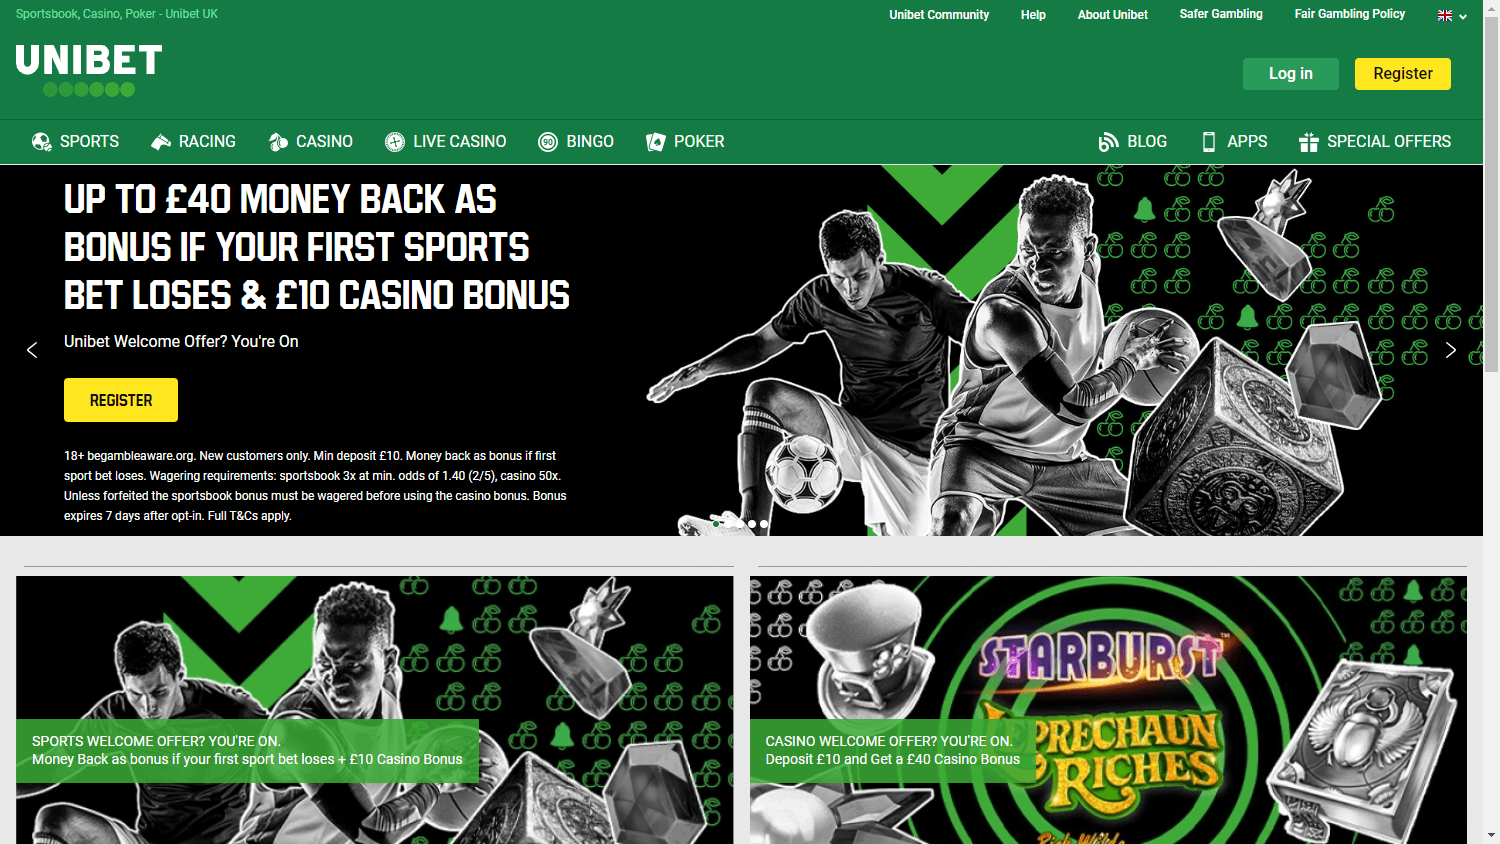 unibet_casino_uk_homepage_desktop